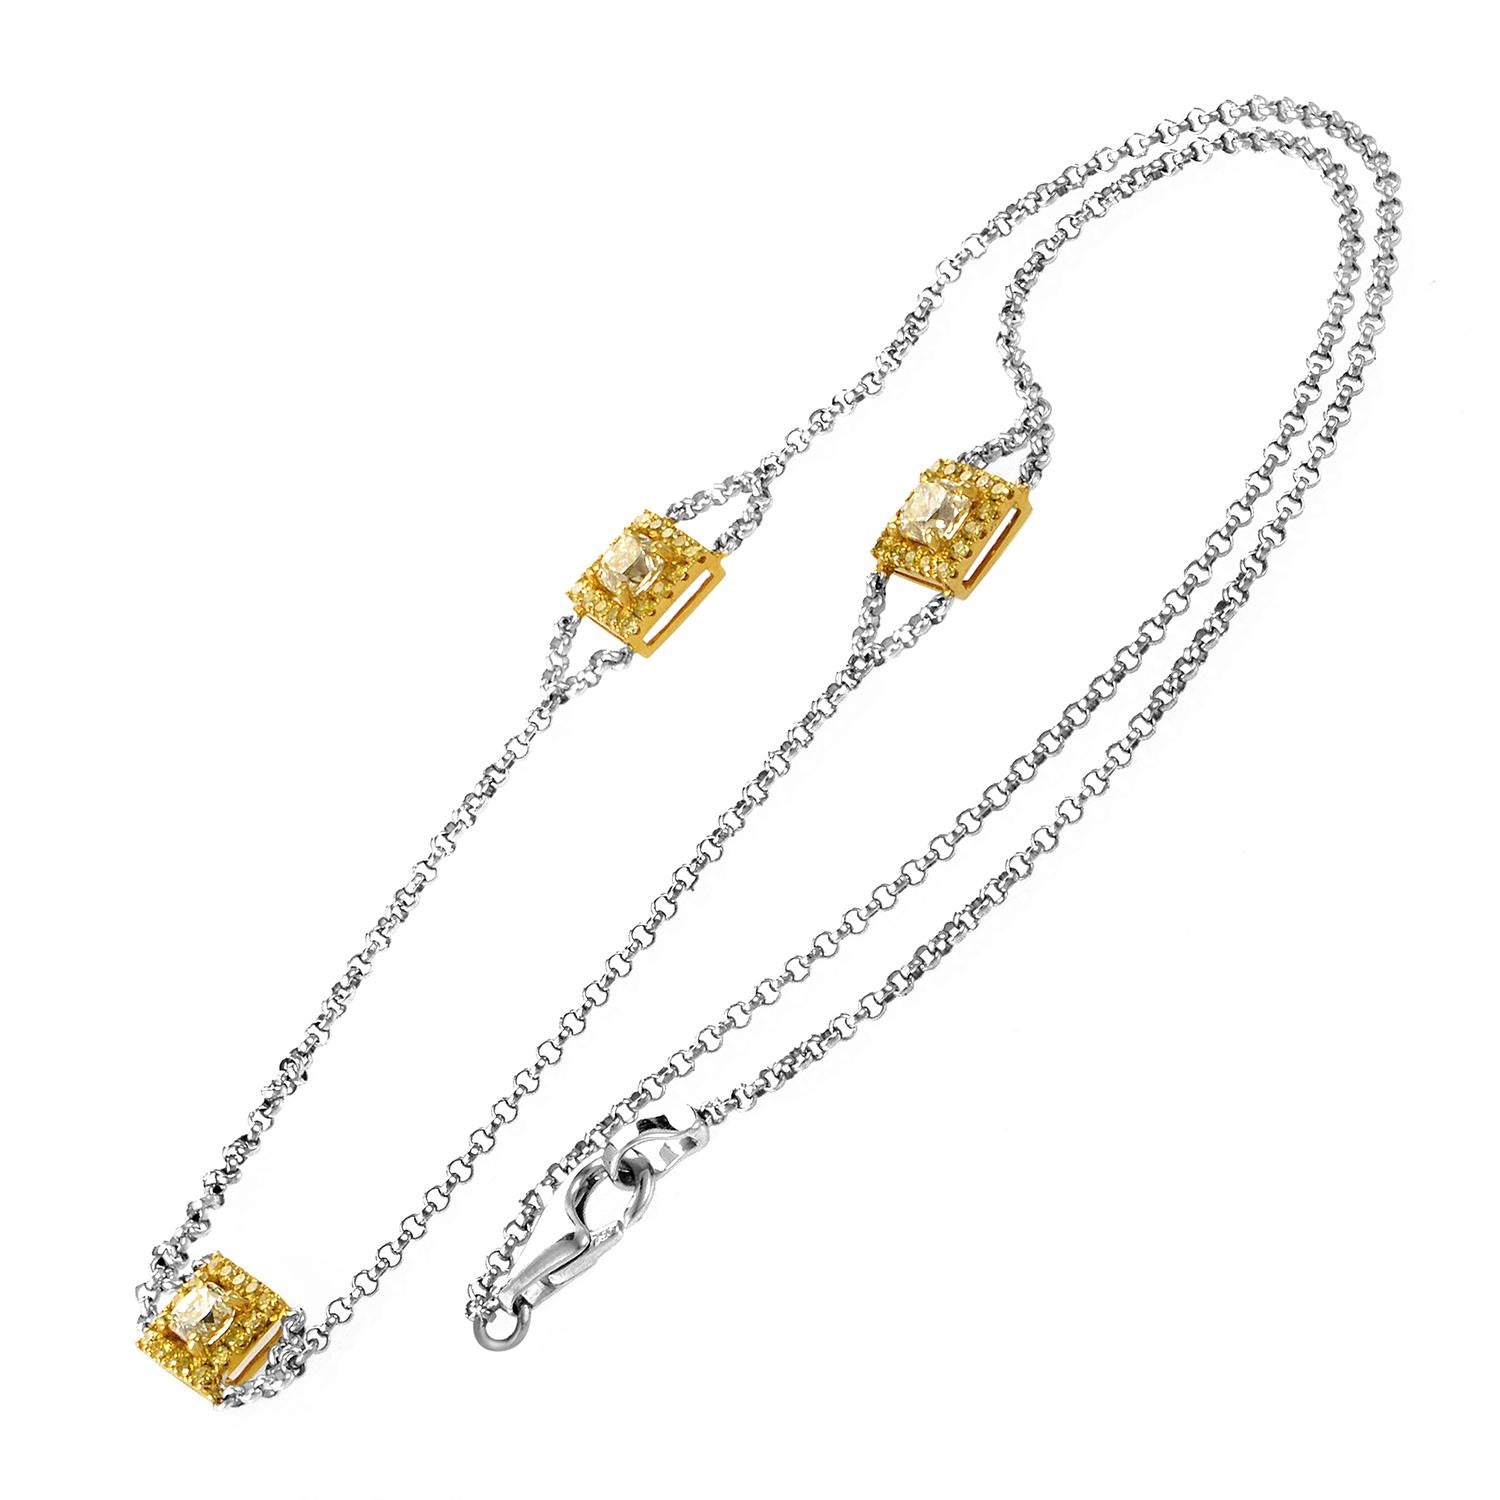 Une touche de luxe à la puissance trois. Des liens en or blanc 18 carats constituent le fil conducteur entre trois pendentifs en or jaune. Chaque petite monture encadre un éclatant diamant de 1,40 ct.
